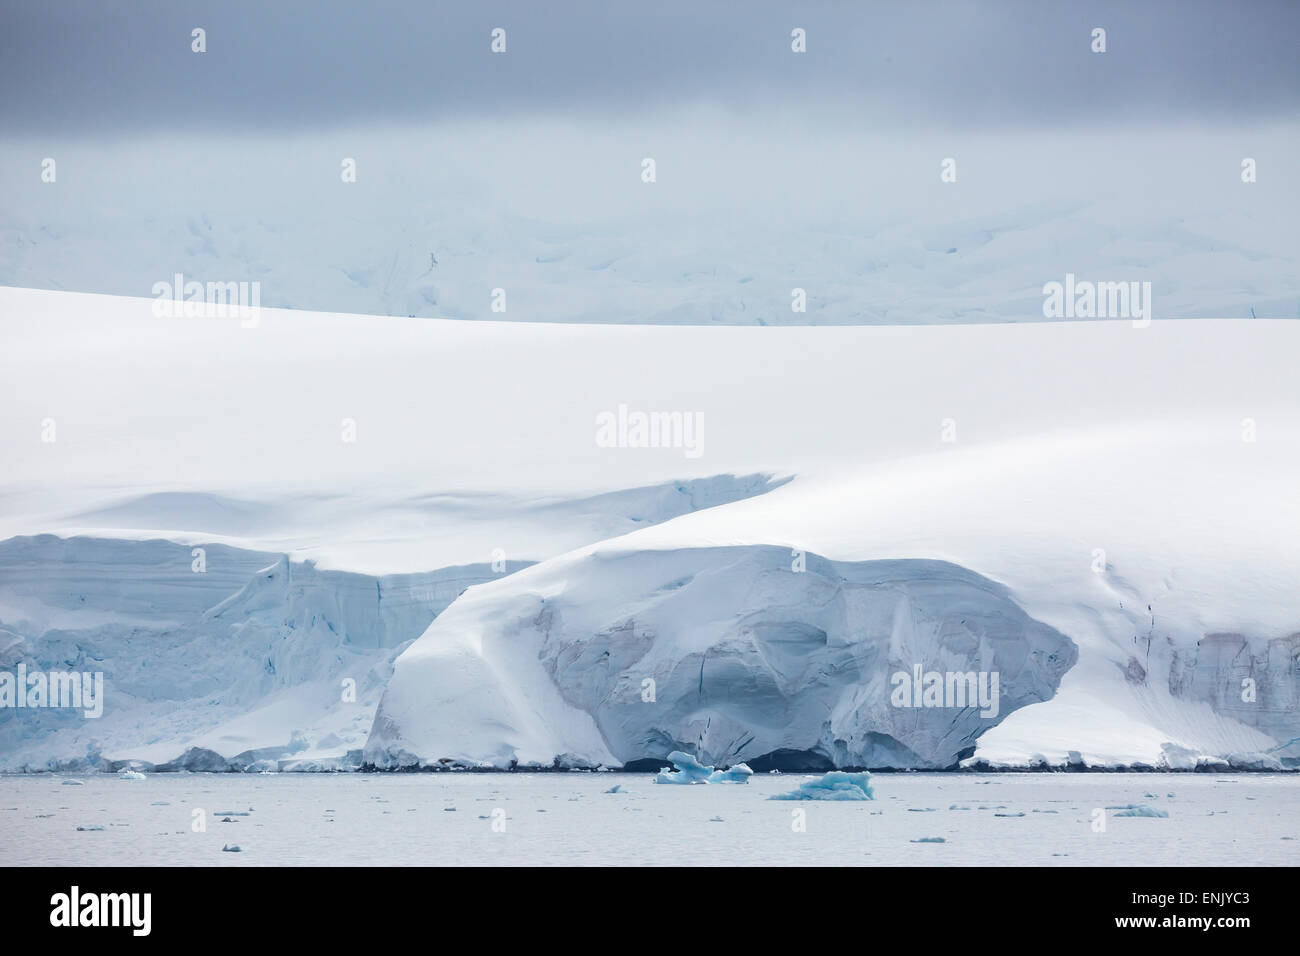 Montañas cubiertas de nieve y glaciares en la Bahía Dallmann, en la Antártida, las regiones polares Foto de stock